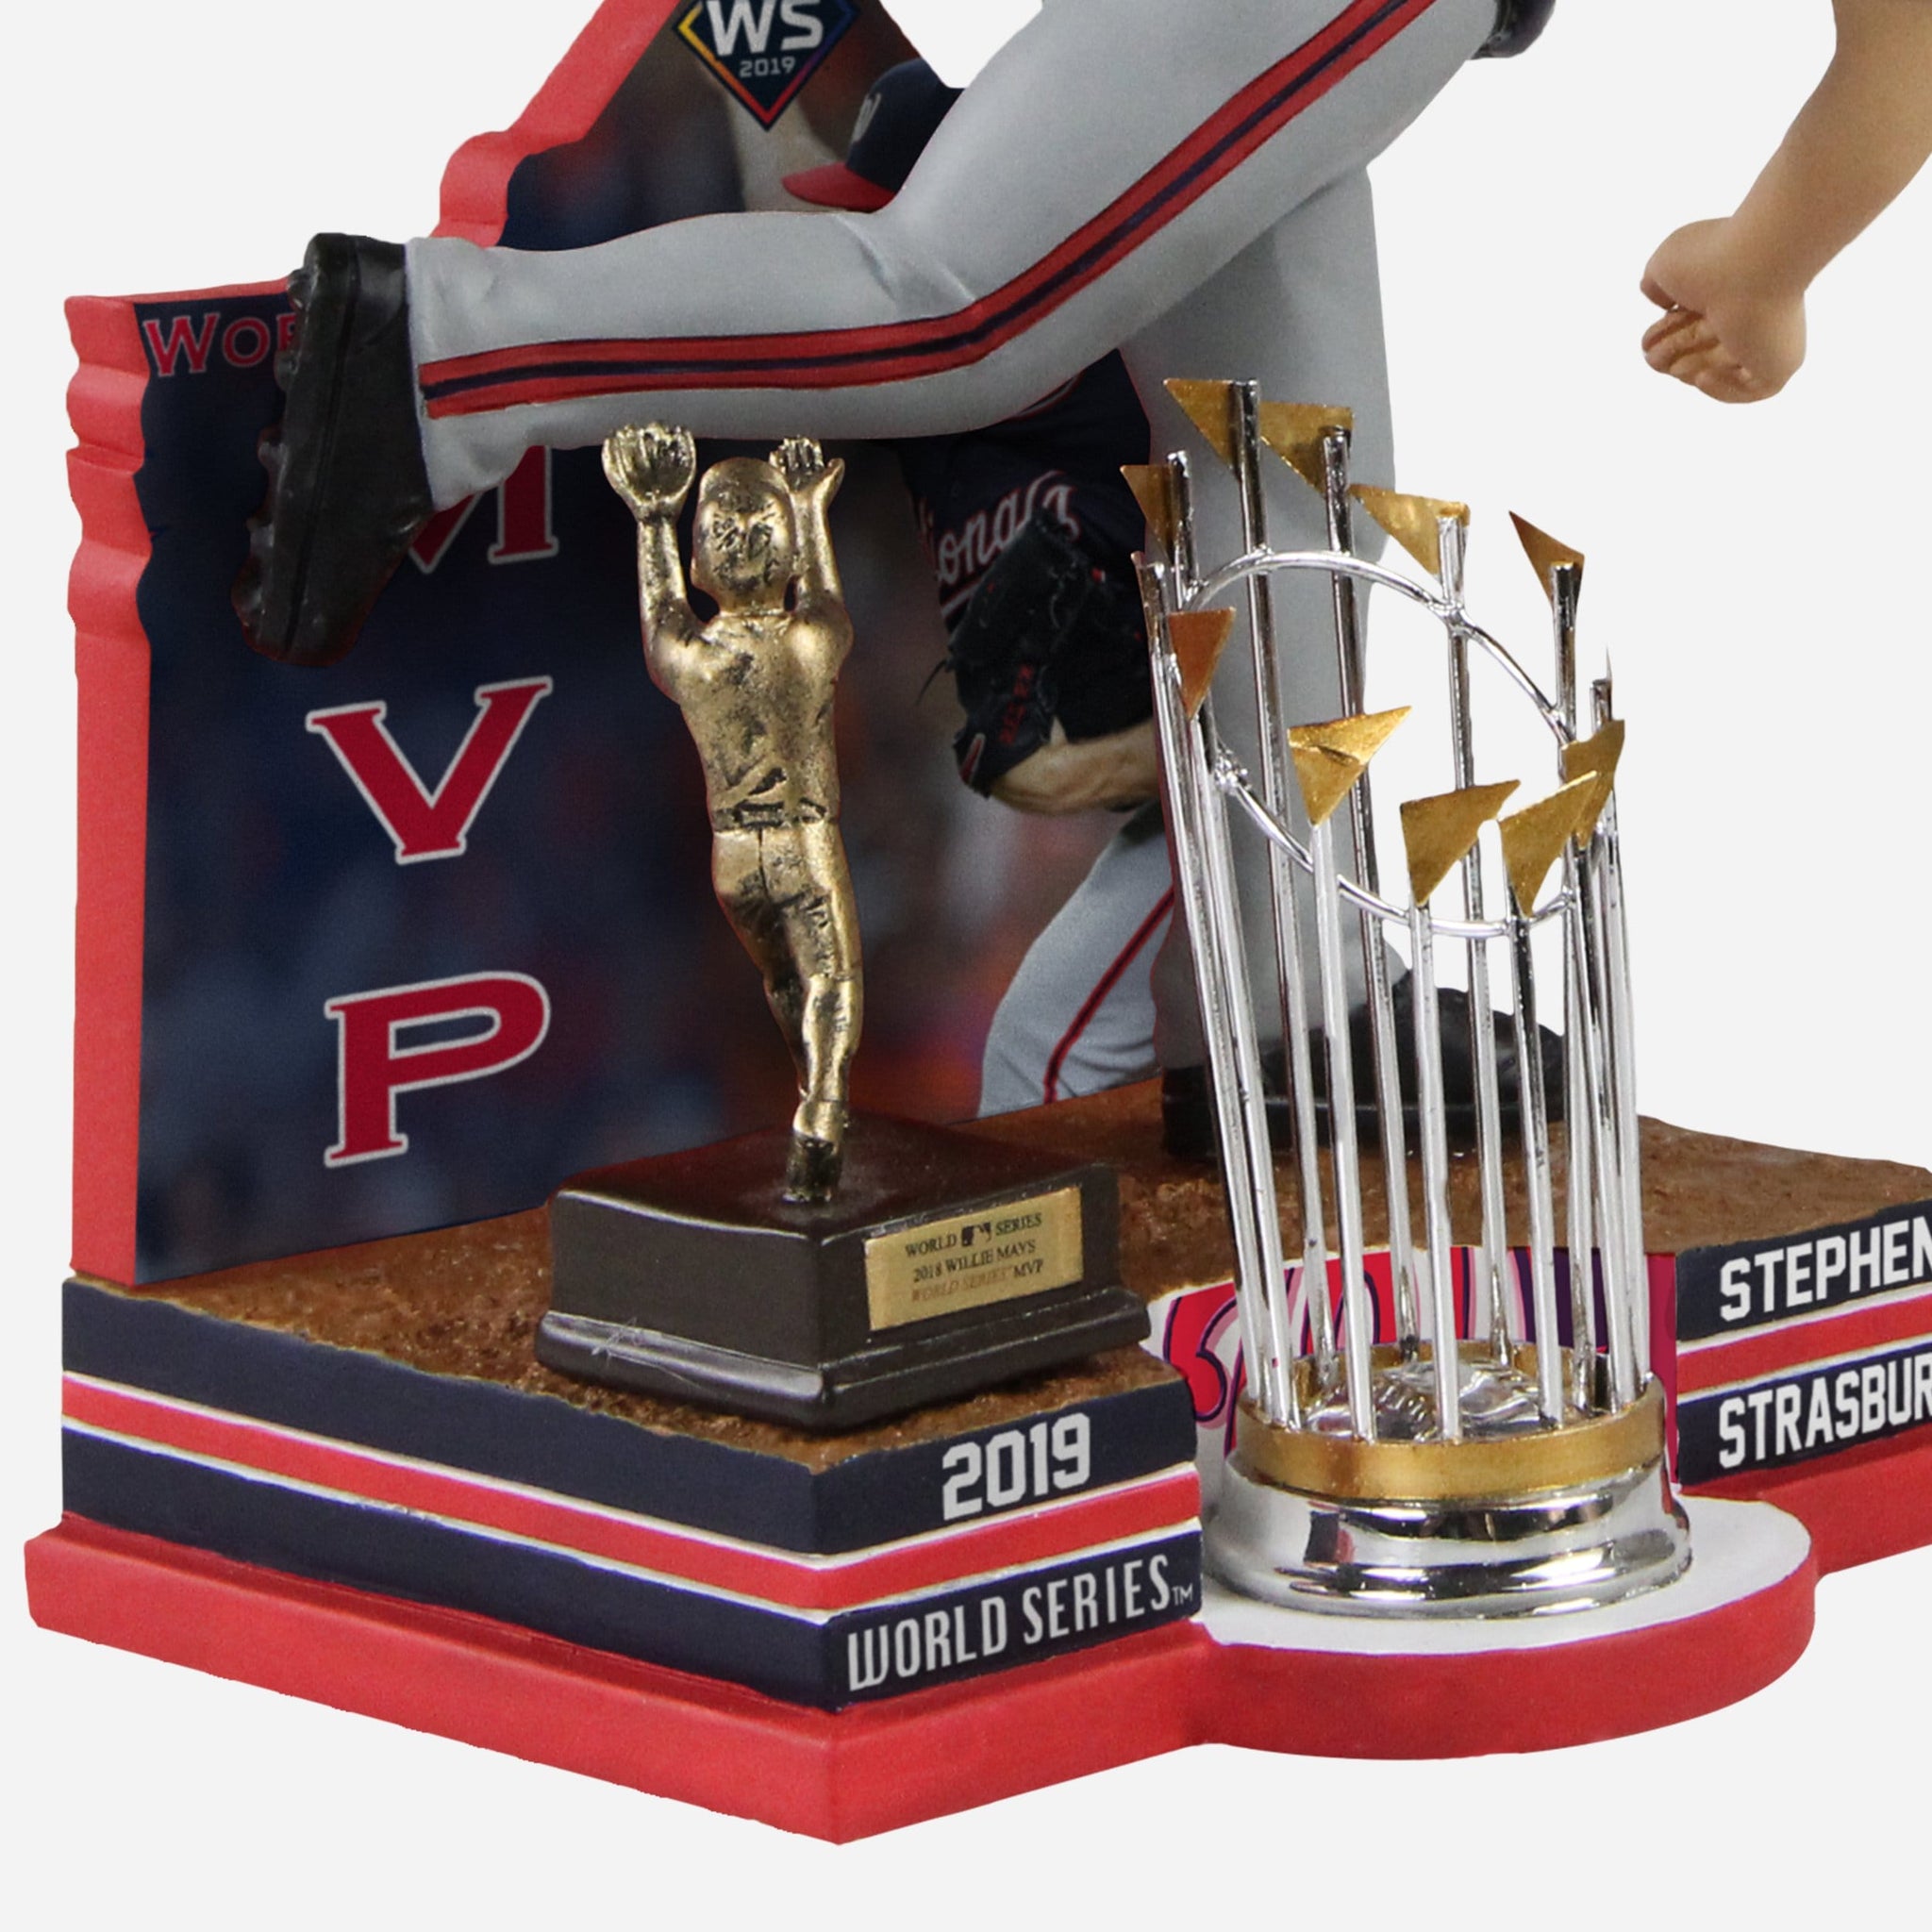 Nationals Receive World Series Trophy & Stephen Strasburg Receives